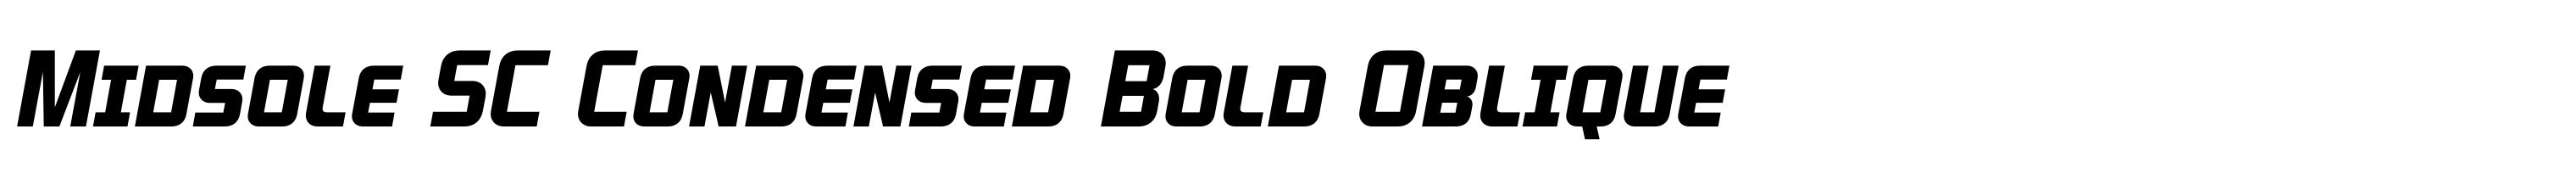 Midsole SC Condensed Bold Oblique